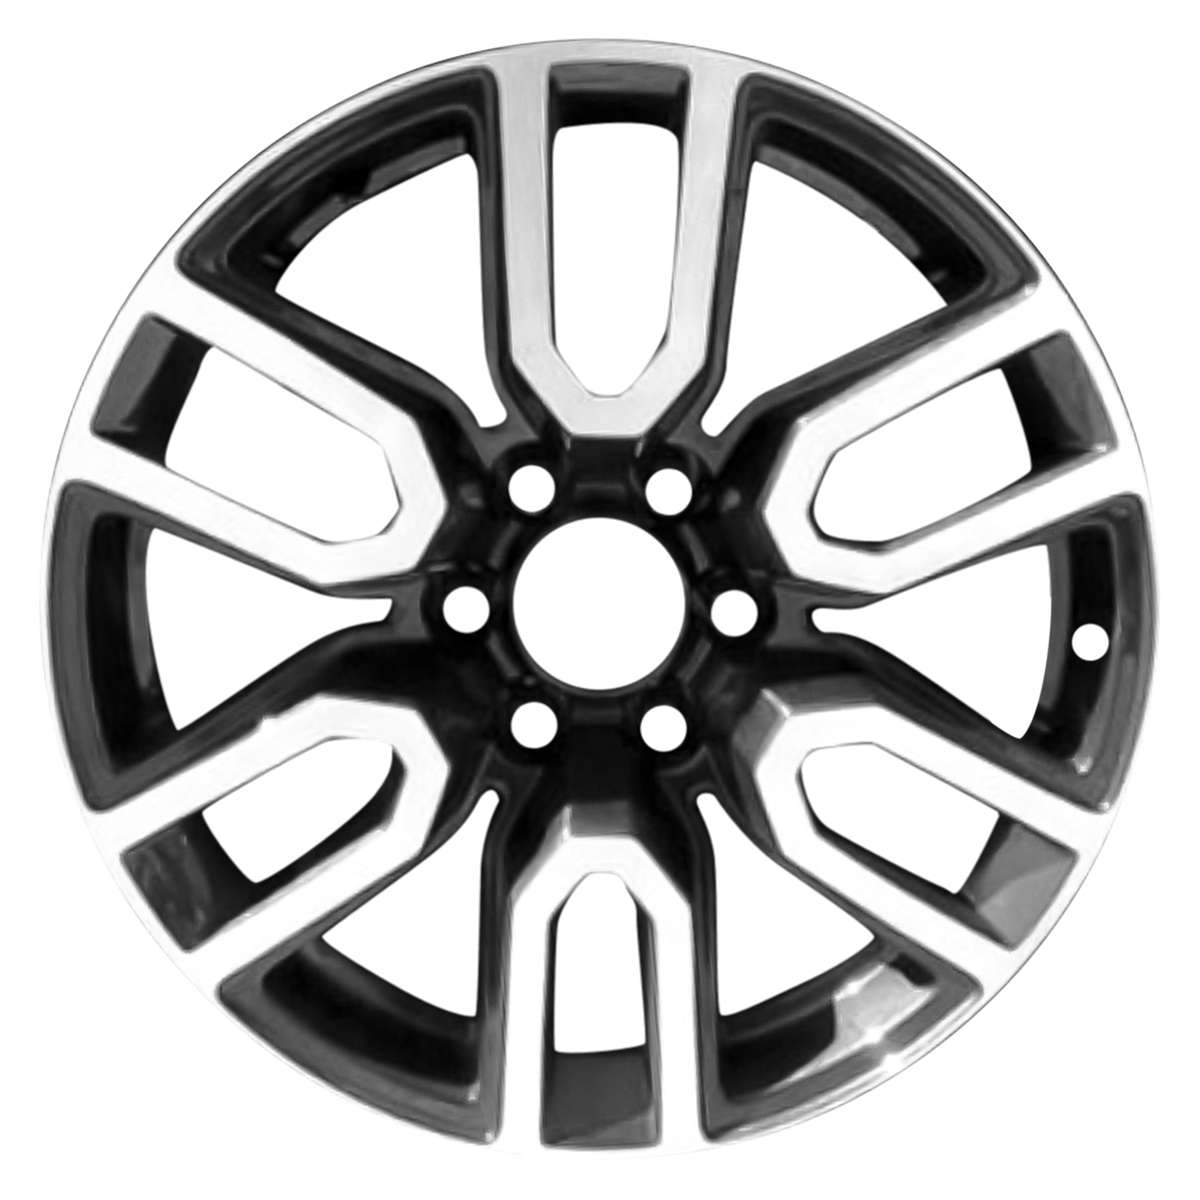 2021 GMC Yukon XL 20" OEM Wheel Rim W5914MB